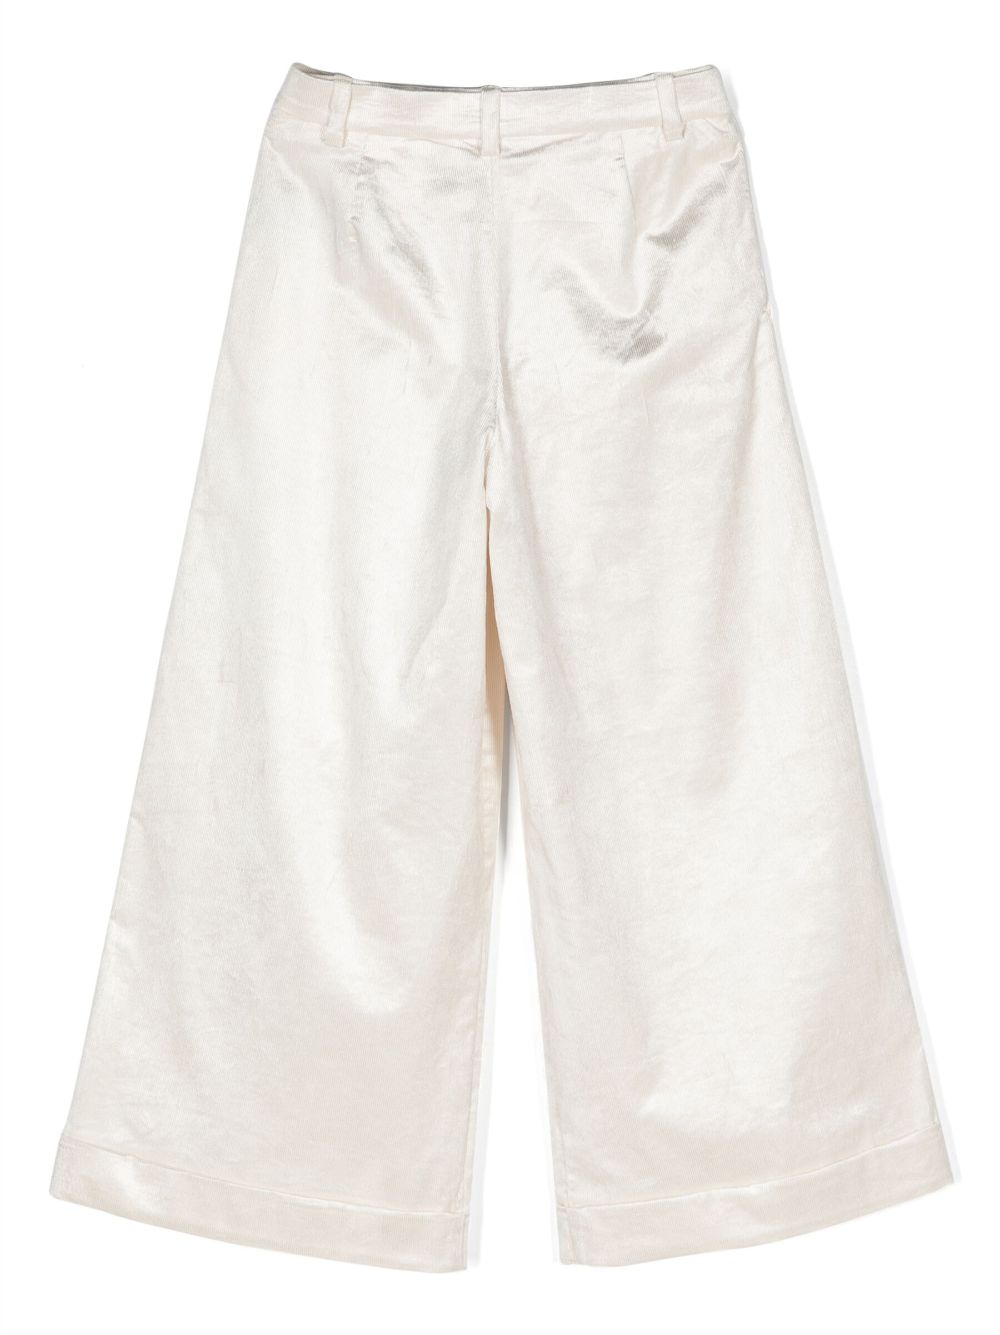 Pantalone bianco bambina a coste